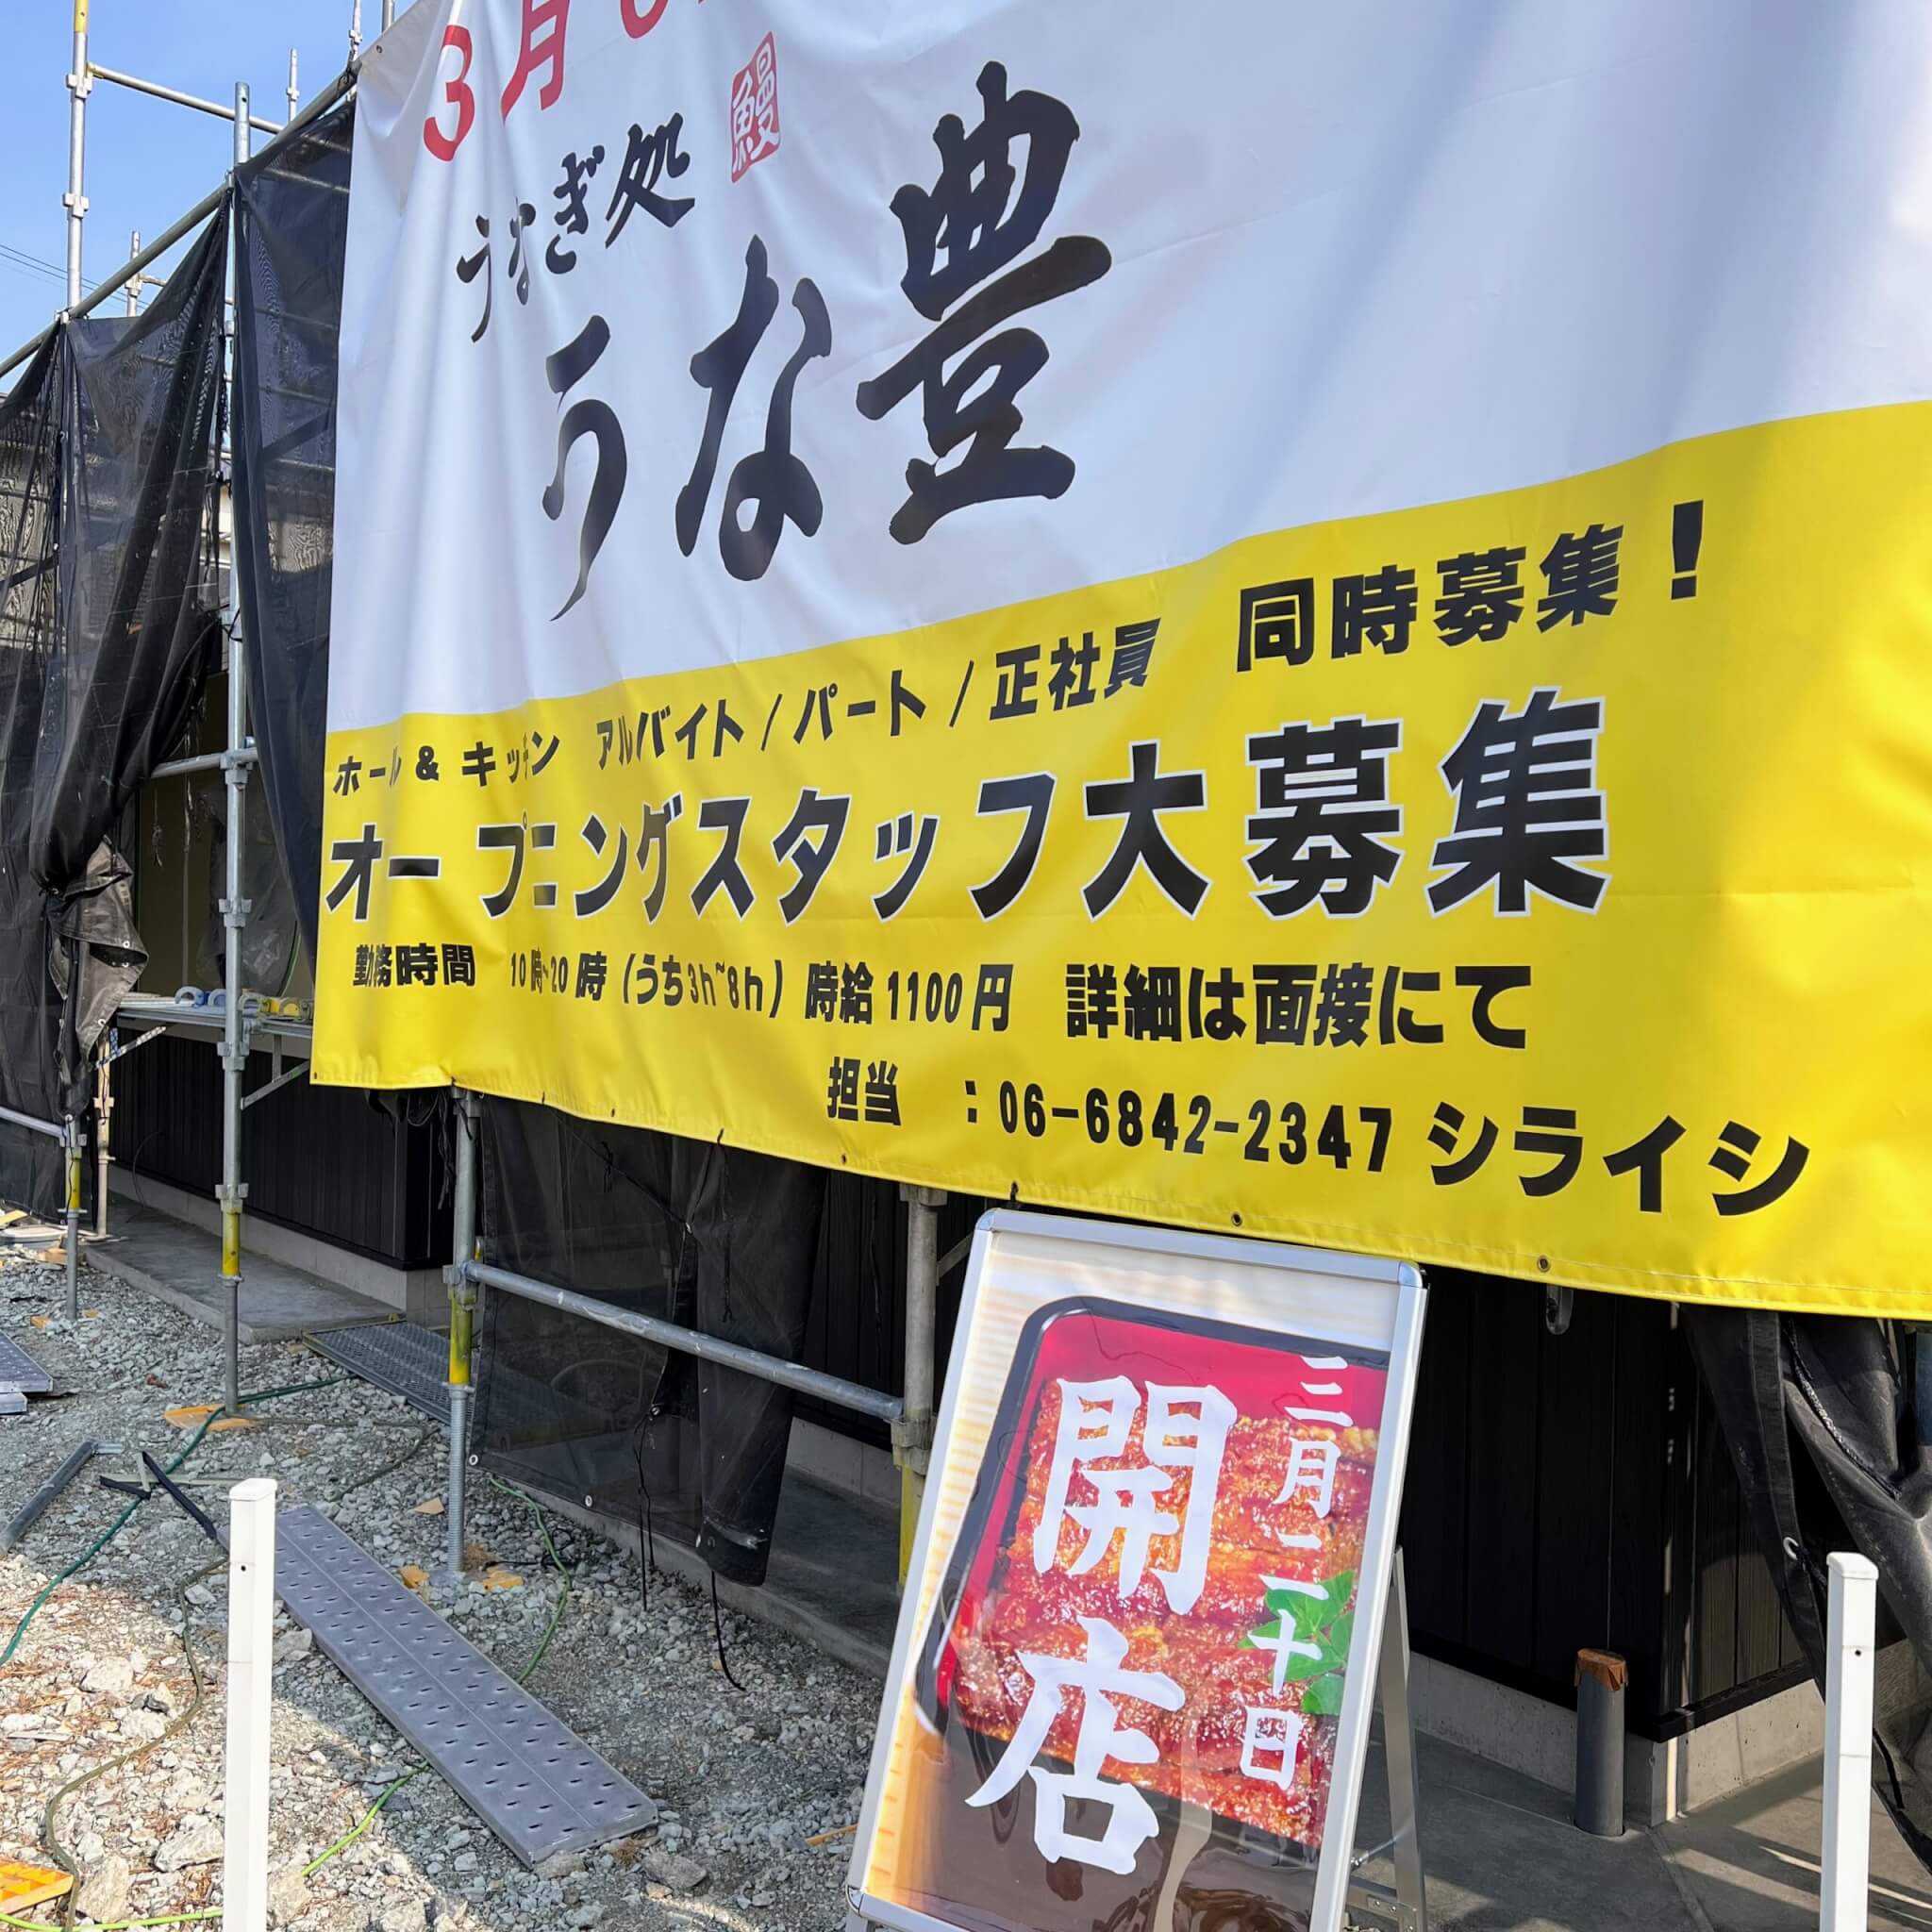 うな豊加古川店の工事現場に出ていた三月二十日開店のお知らせ